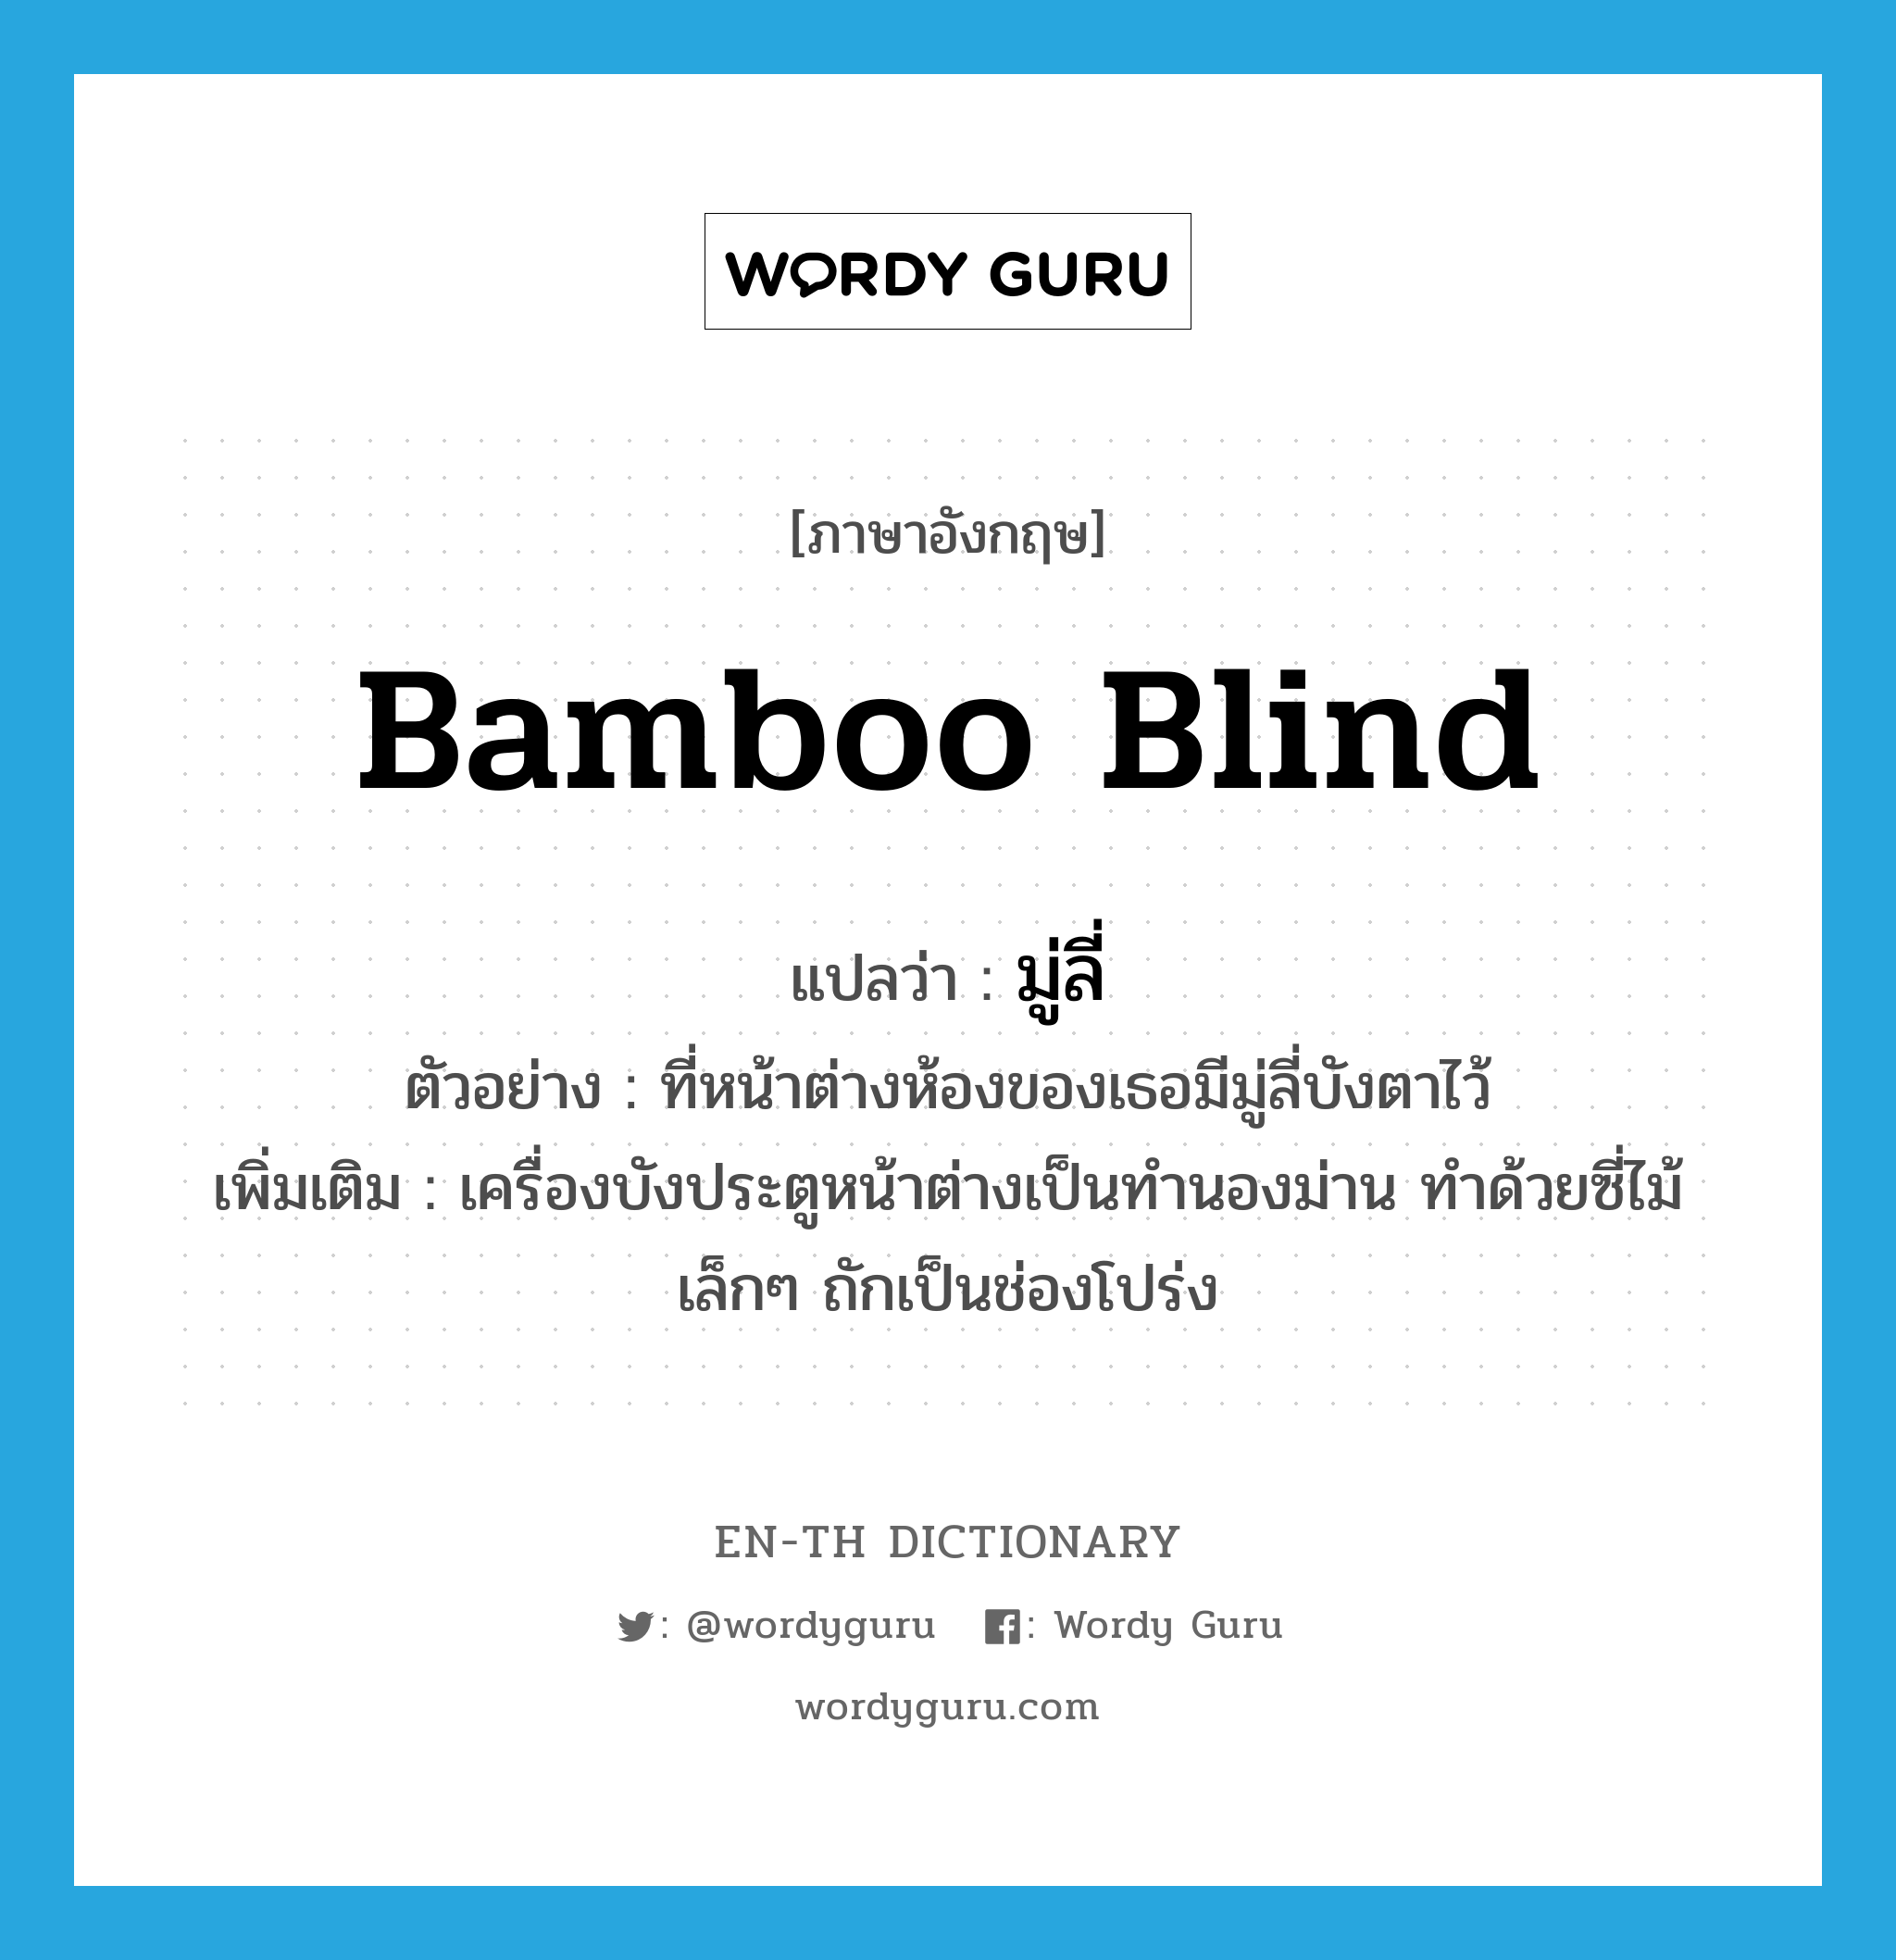 bamboo blind แปลว่า?, คำศัพท์ภาษาอังกฤษ bamboo blind แปลว่า มู่ลี่ ประเภท N ตัวอย่าง ที่หน้าต่างห้องของเธอมีมู่ลี่บังตาไว้ เพิ่มเติม เครื่องบังประตูหน้าต่างเป็นทำนองม่าน ทำด้วยซี่ไม้เล็กๆ ถักเป็นช่องโปร่ง หมวด N